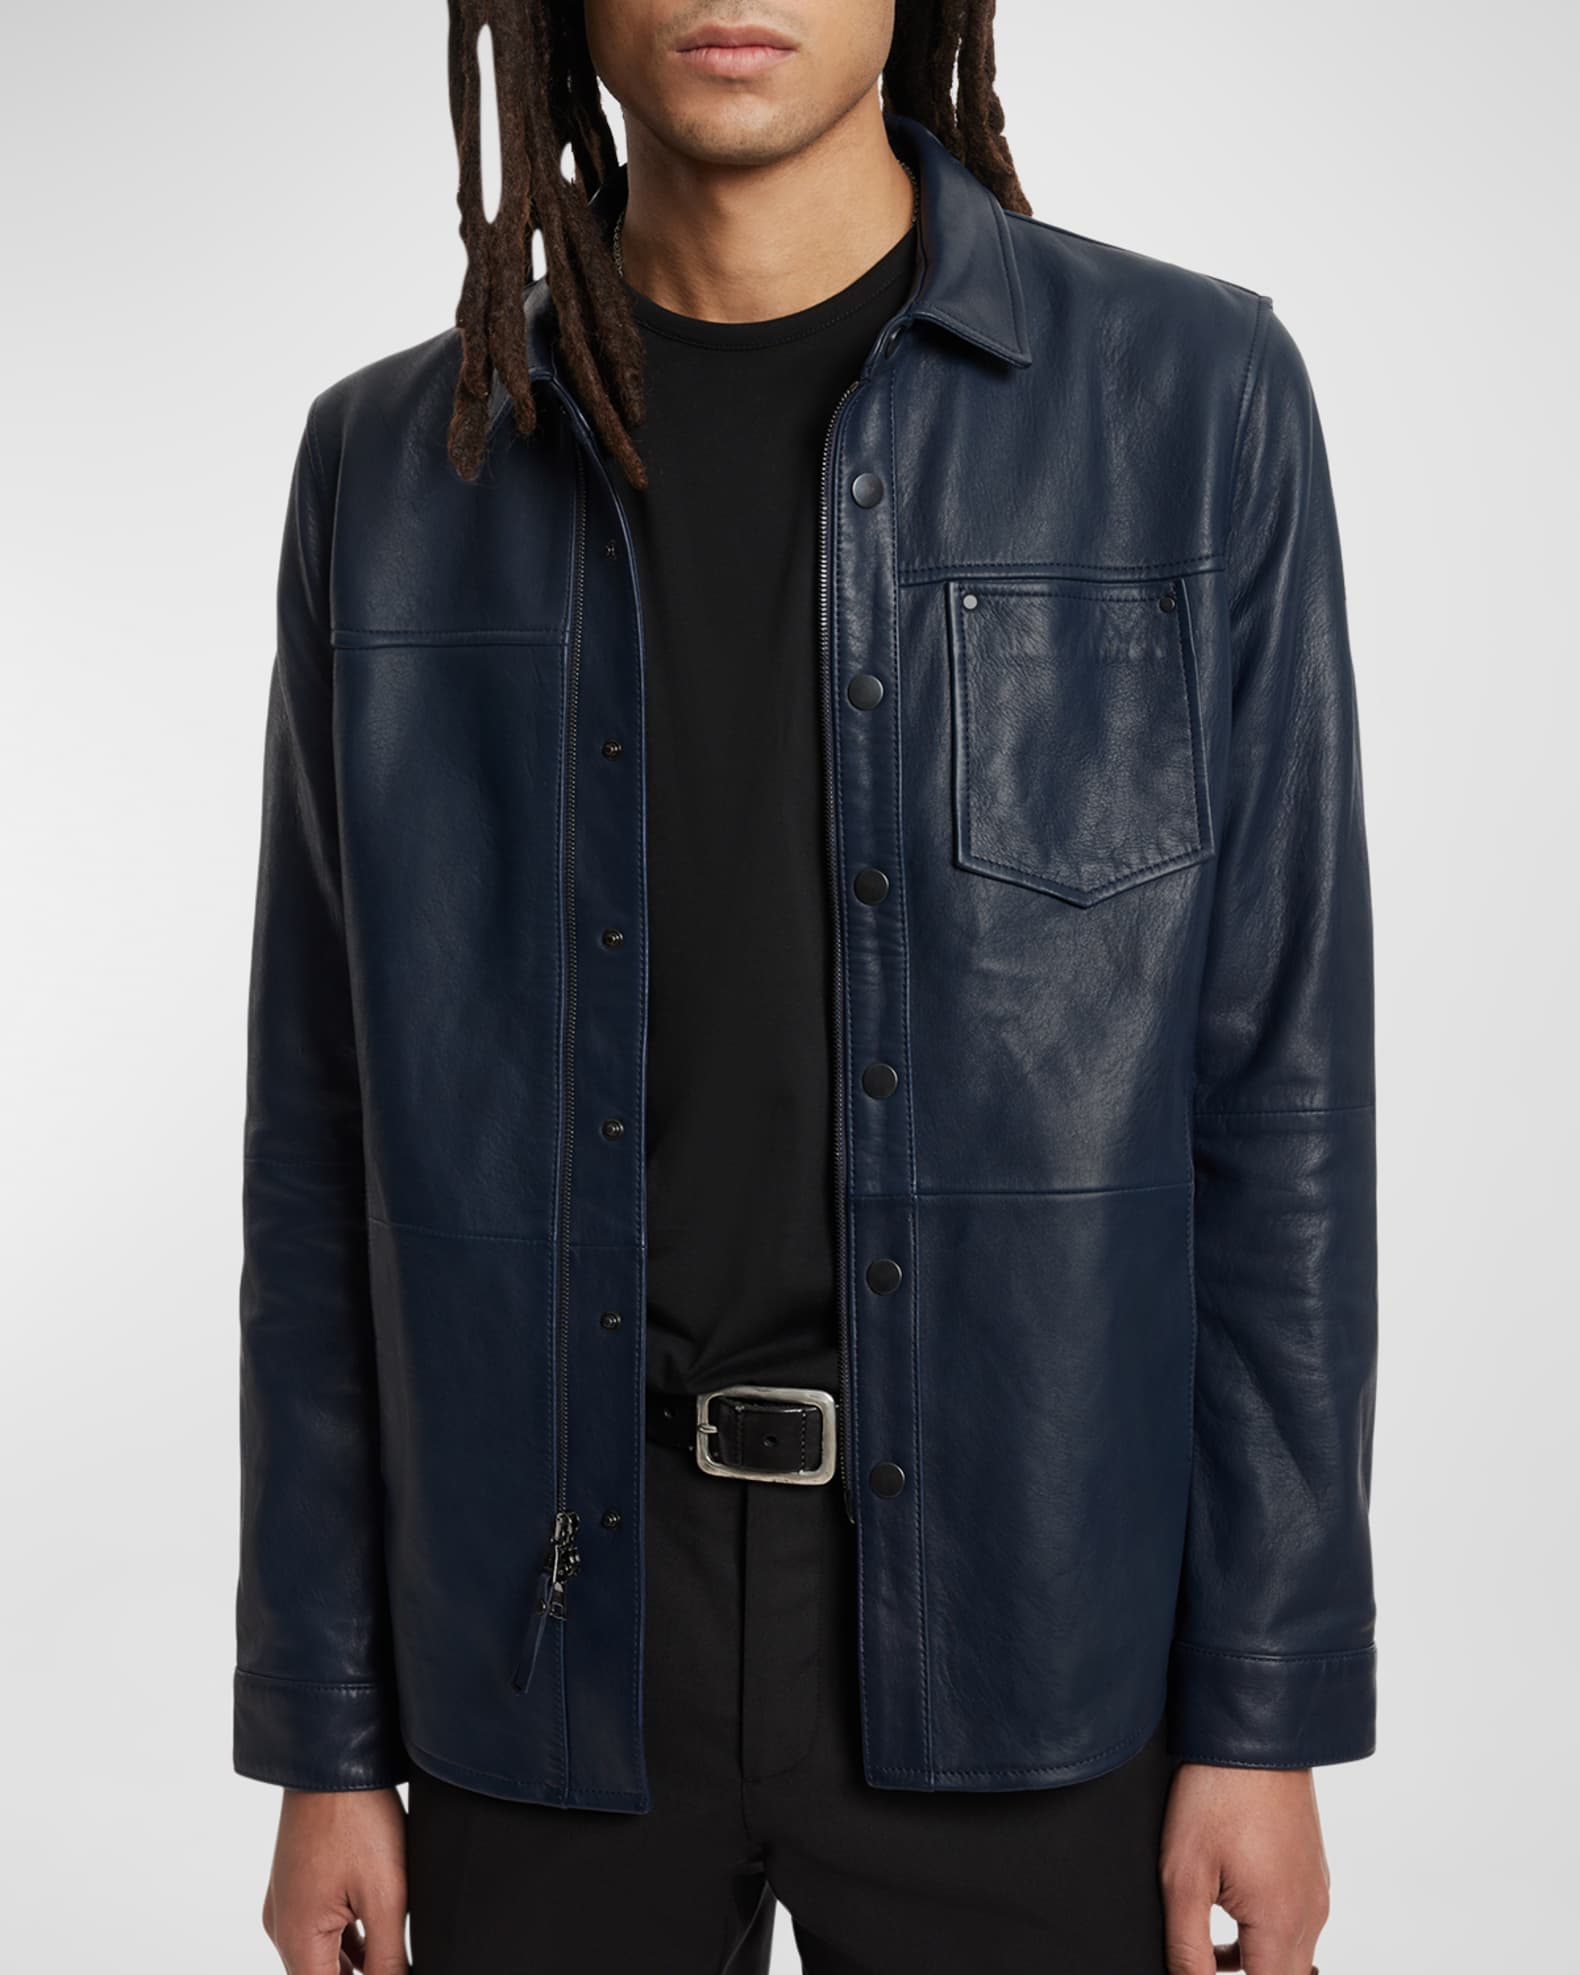 John Varvatos Men's Leather Zip and Snap Jacket | Neiman Marcus